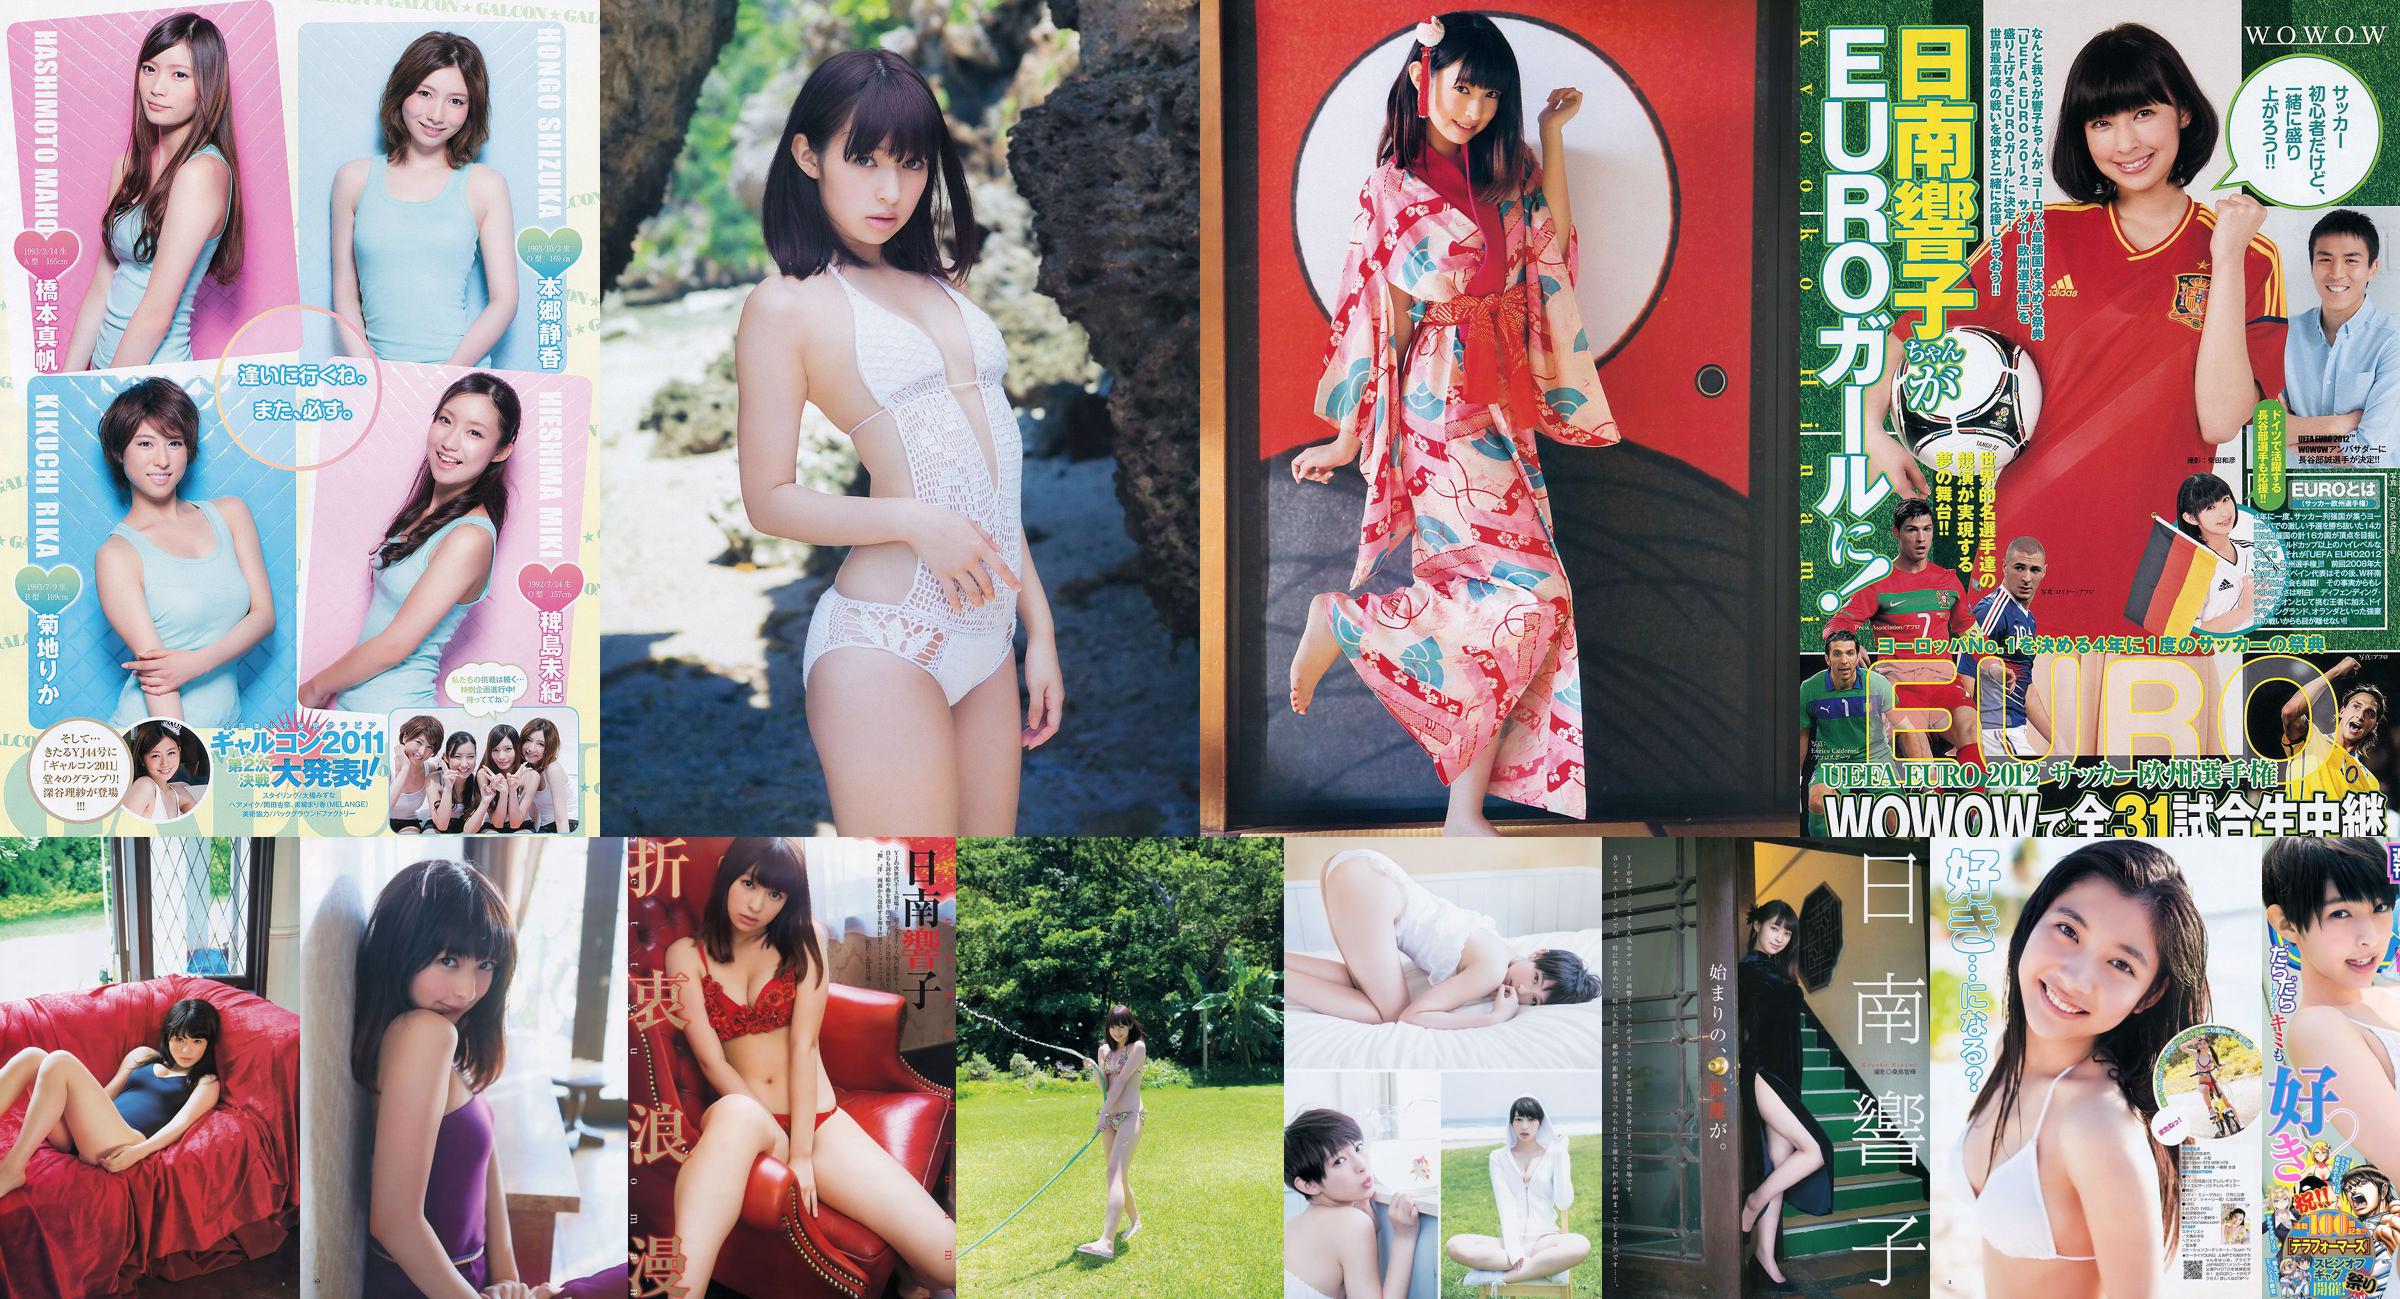 Kyoko Hinami Shizuka Nakamura Galcon Semi-Grand Prix Girls [Weekly Young Jump] 2013 No.19 Foto No.8b043e Pagina 1